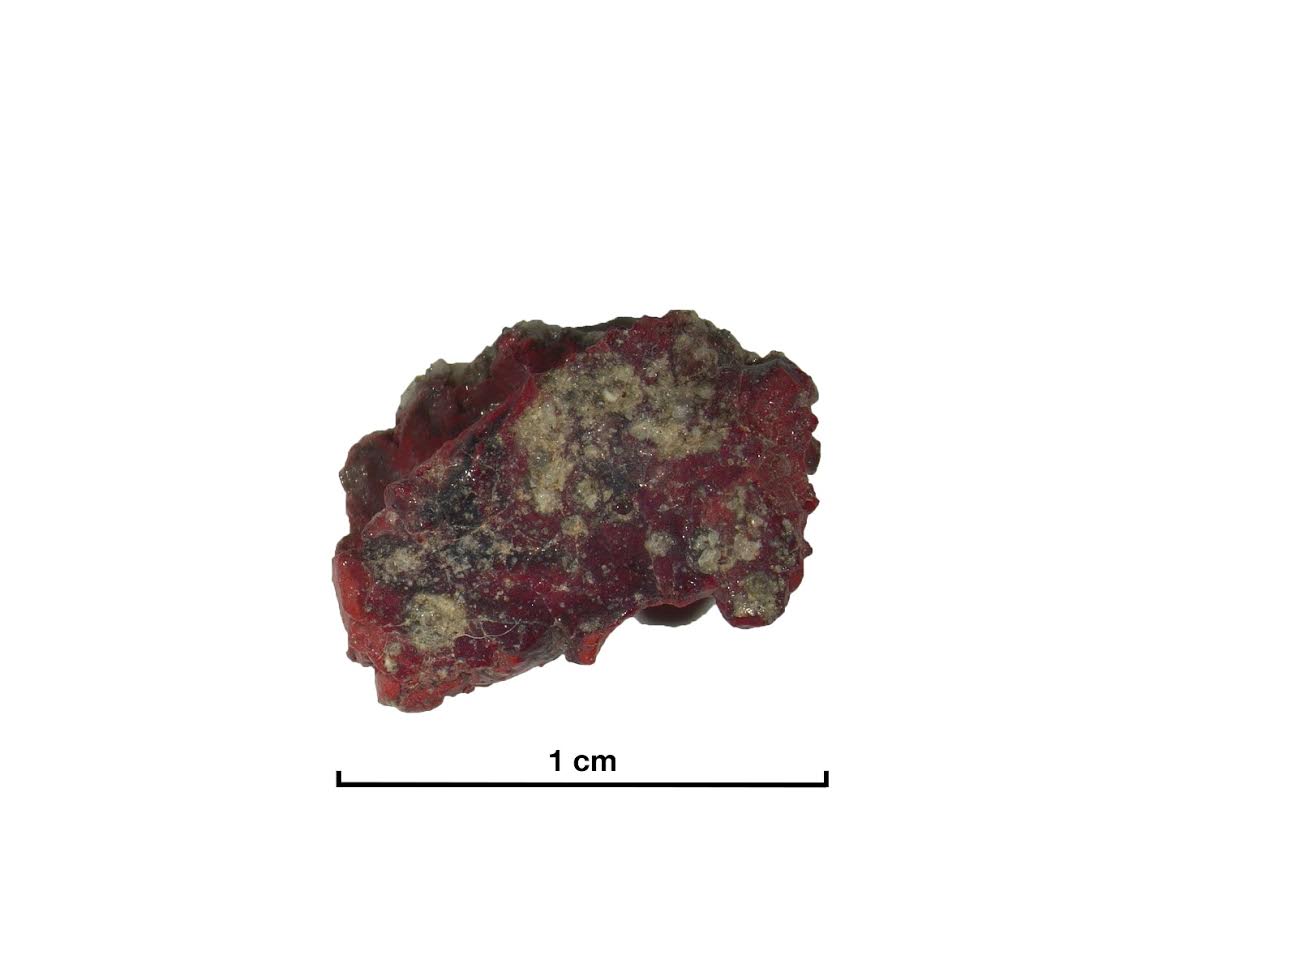 Frammento di Trinitite in cui è stato individuato il quasicristallo